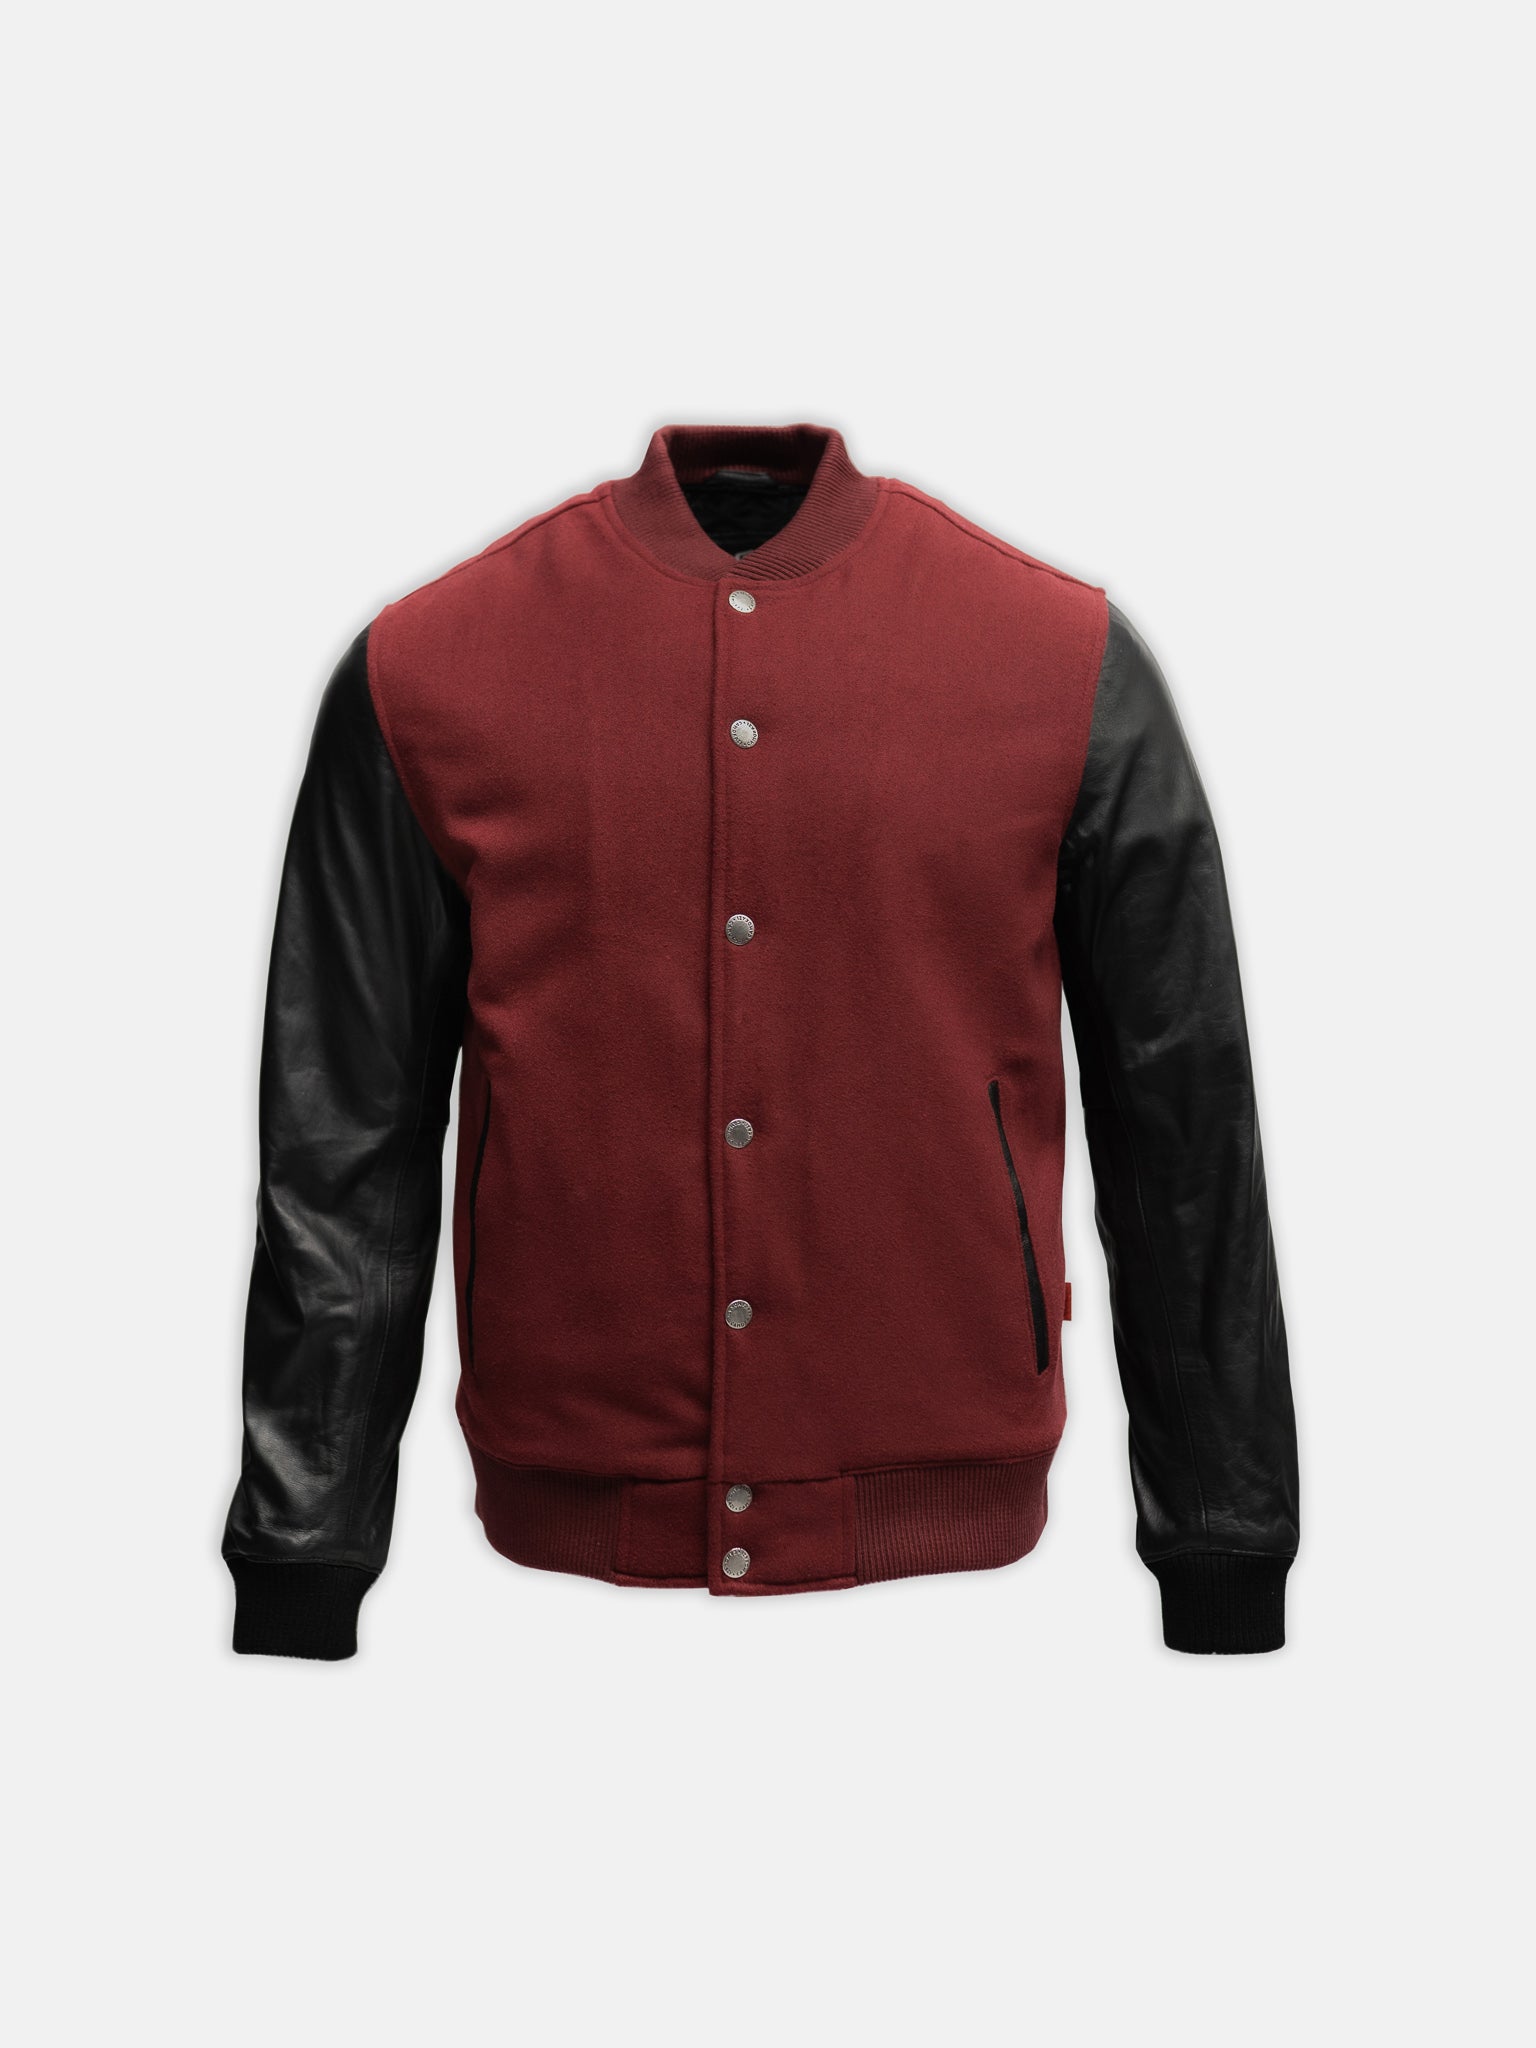 maroon varsity jacket